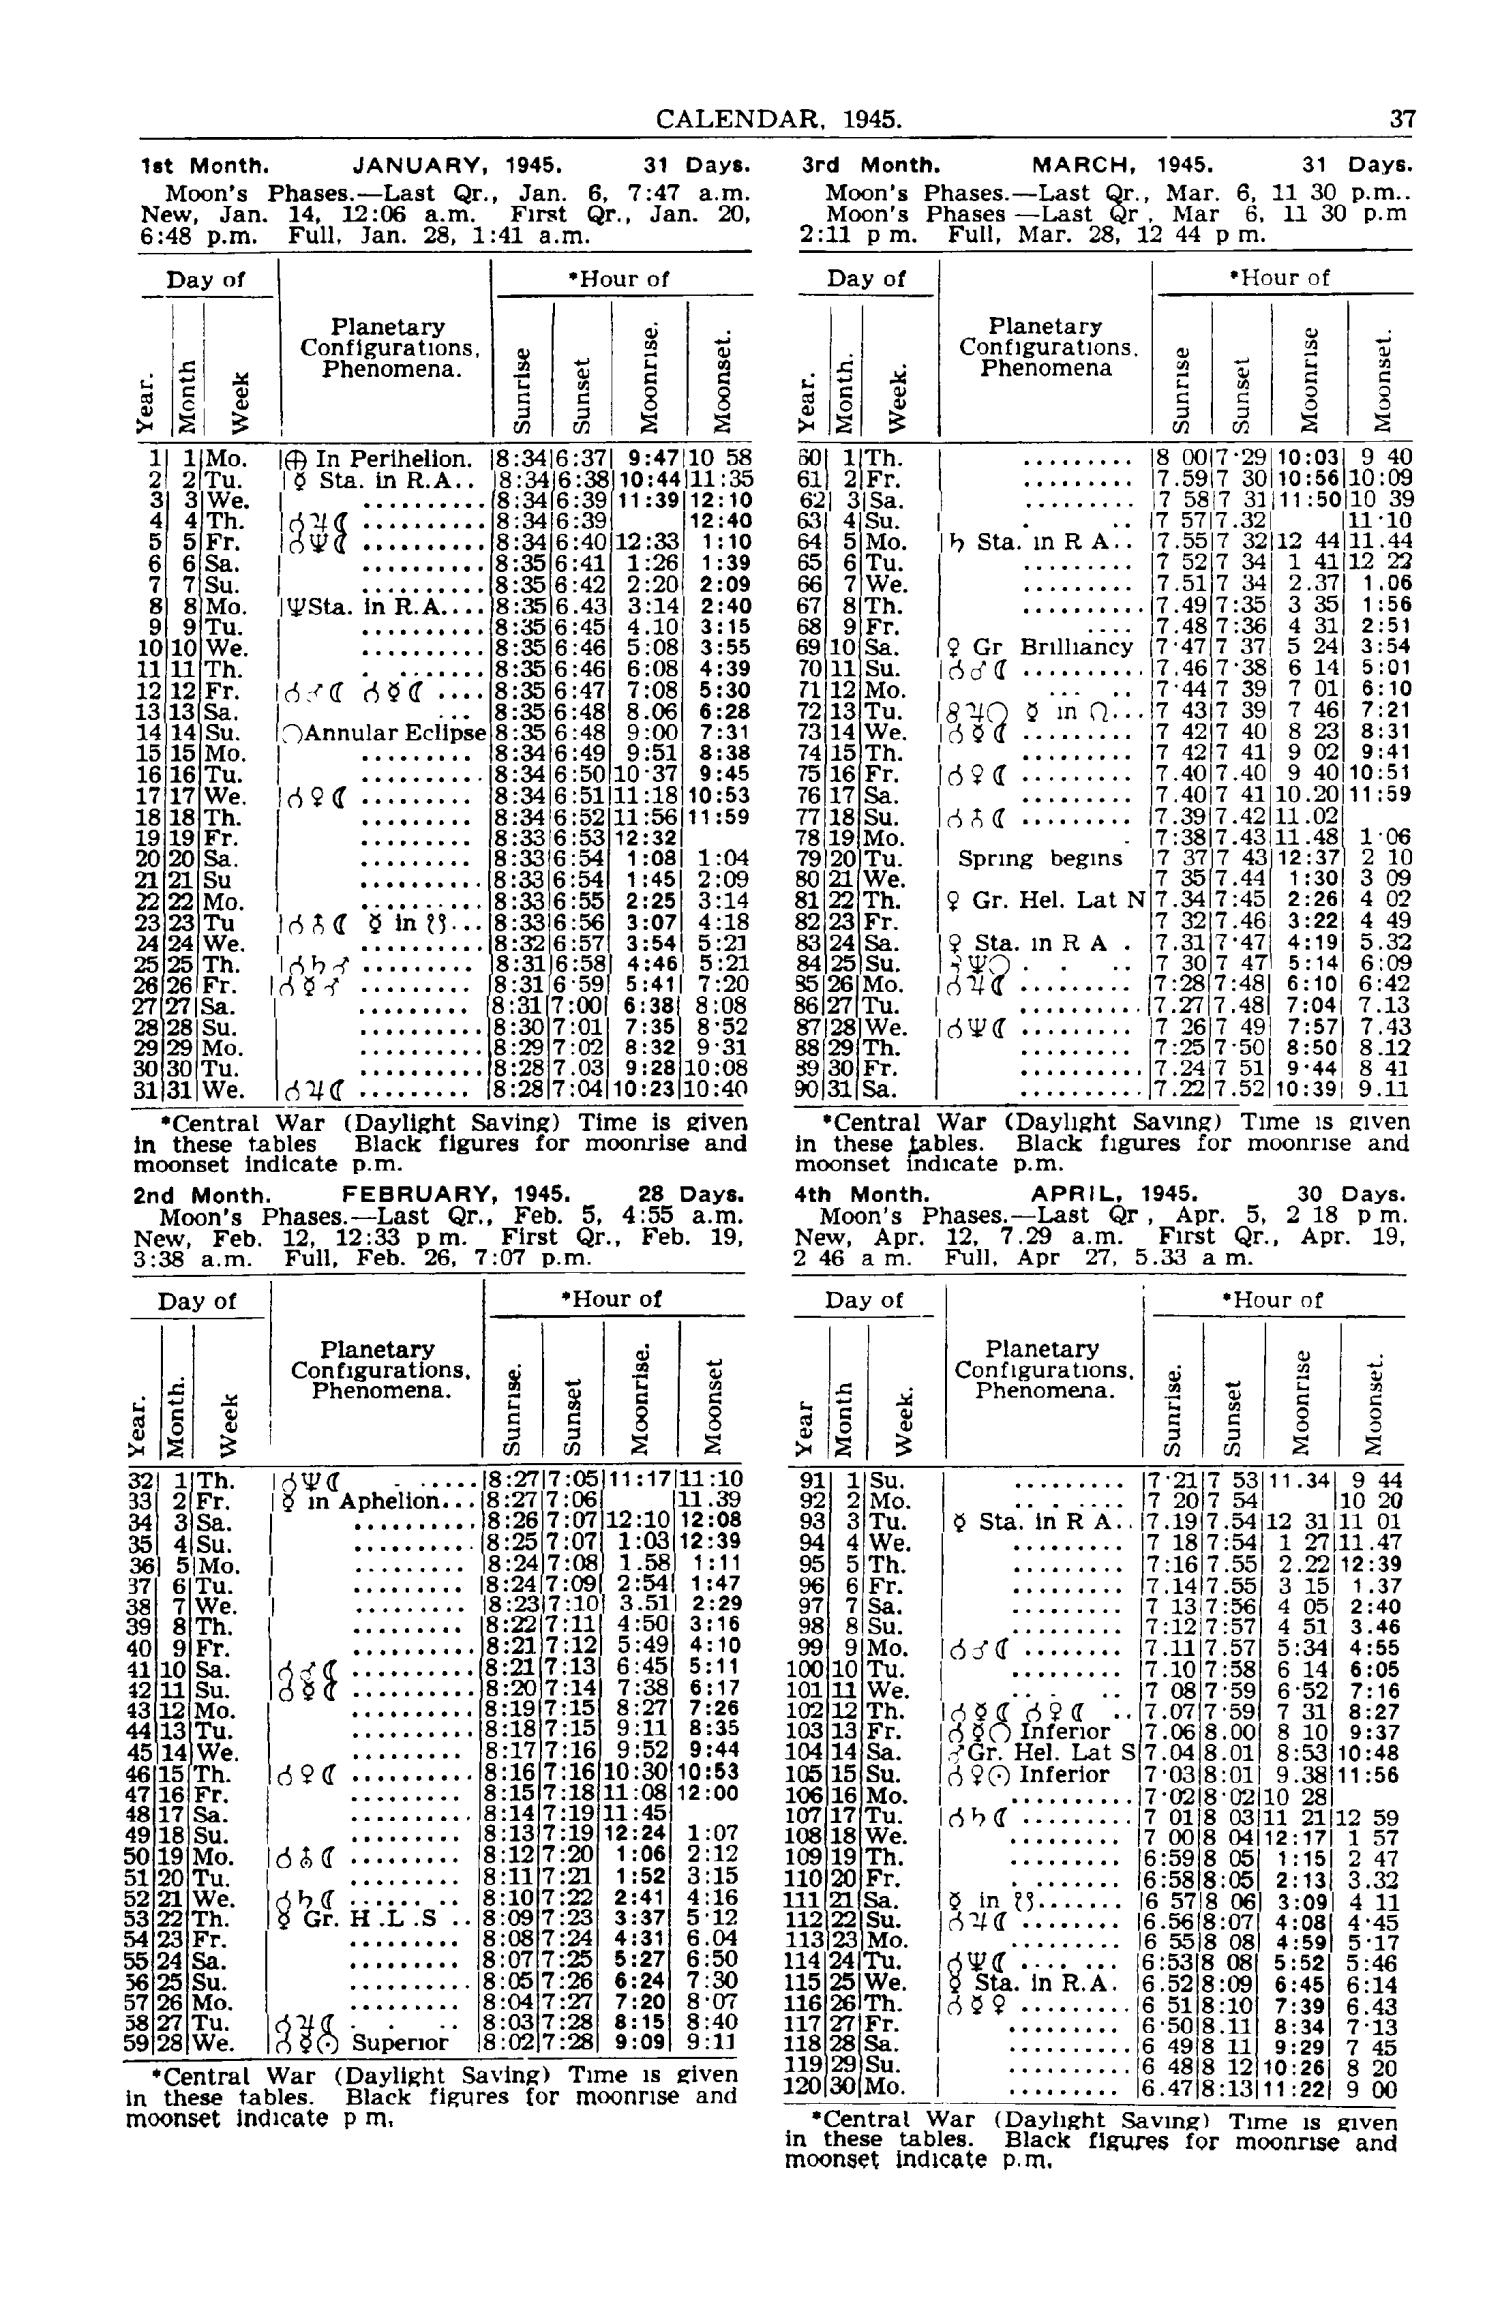 Texas Almanac, 1945-1946
                                                
                                                    37
                                                